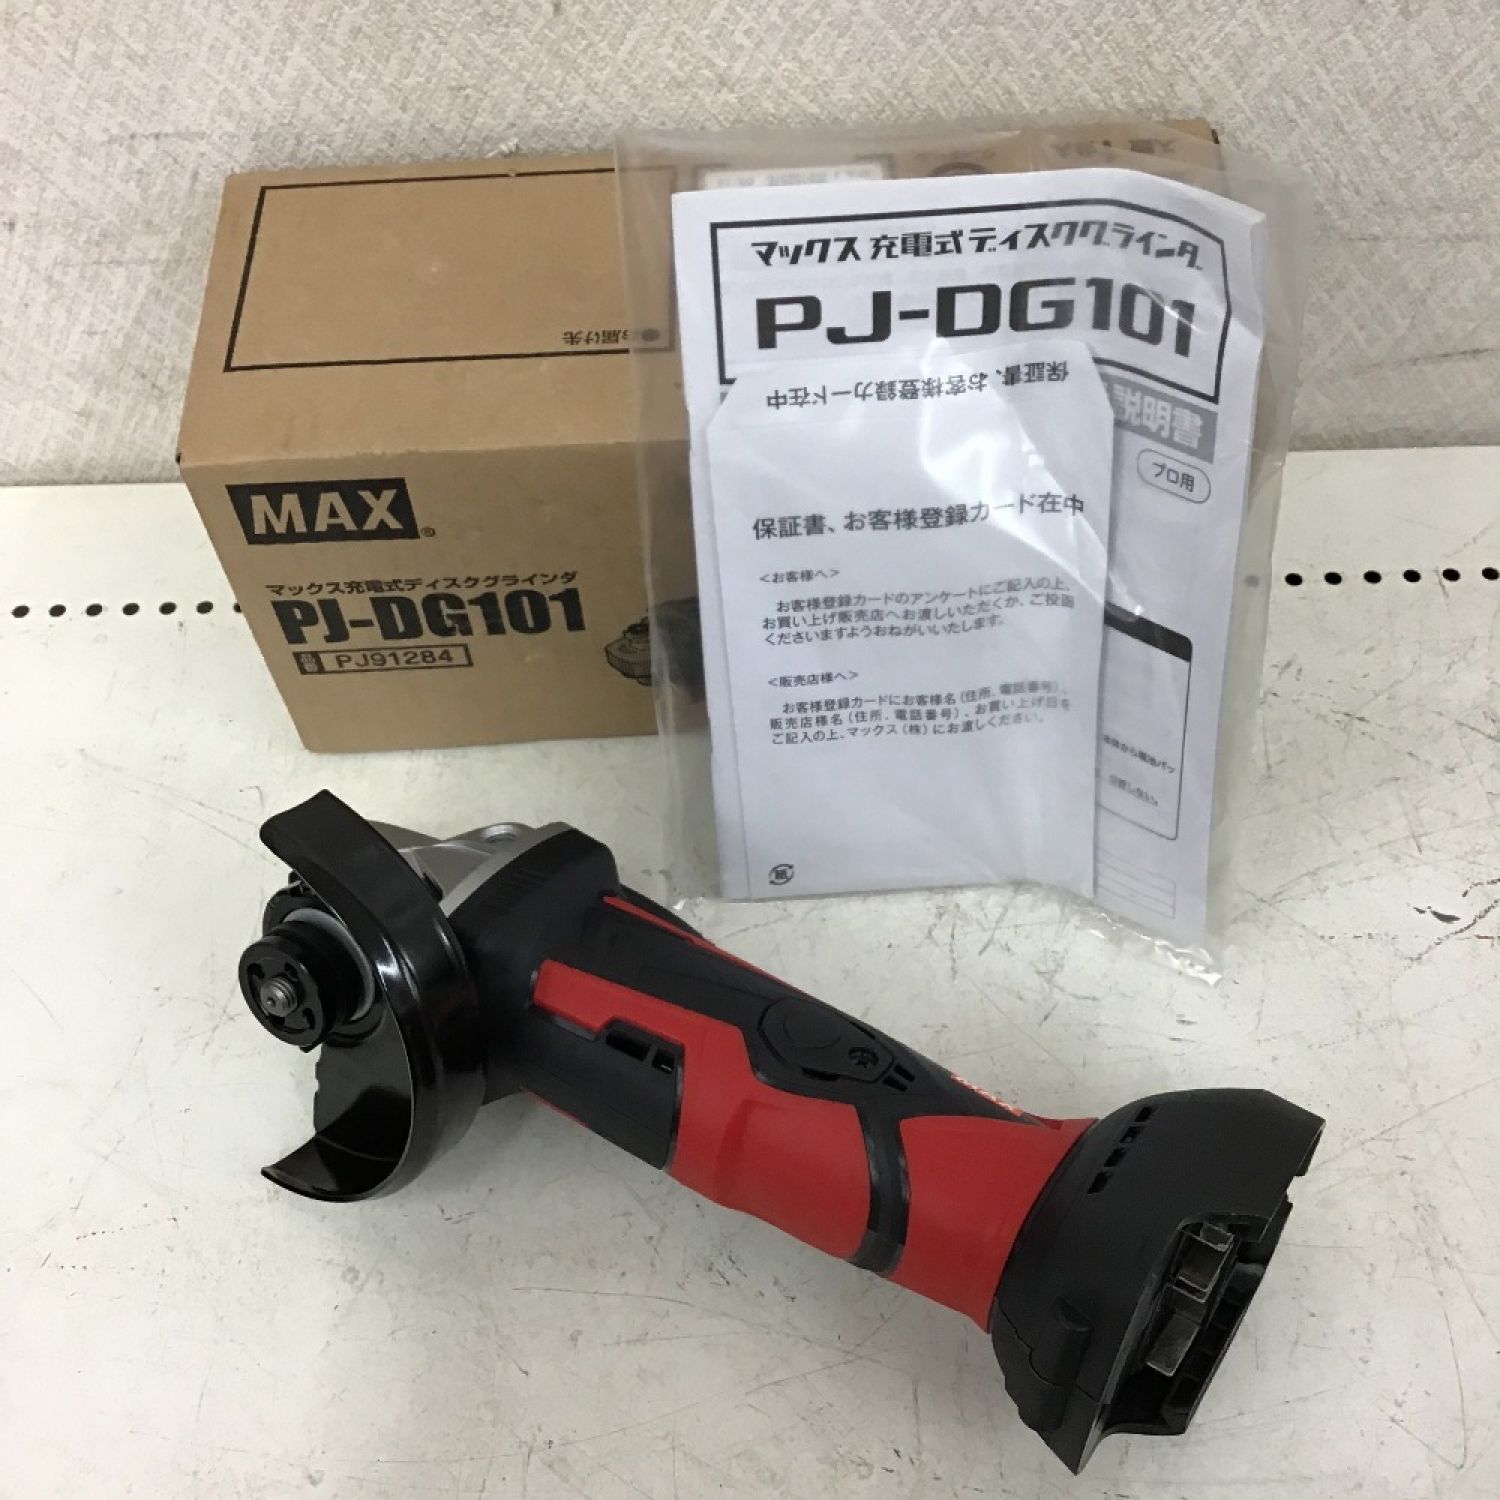 マックス(MAX) 18V充電式ディスクグラインダ PJ-DG101(本体のみ)